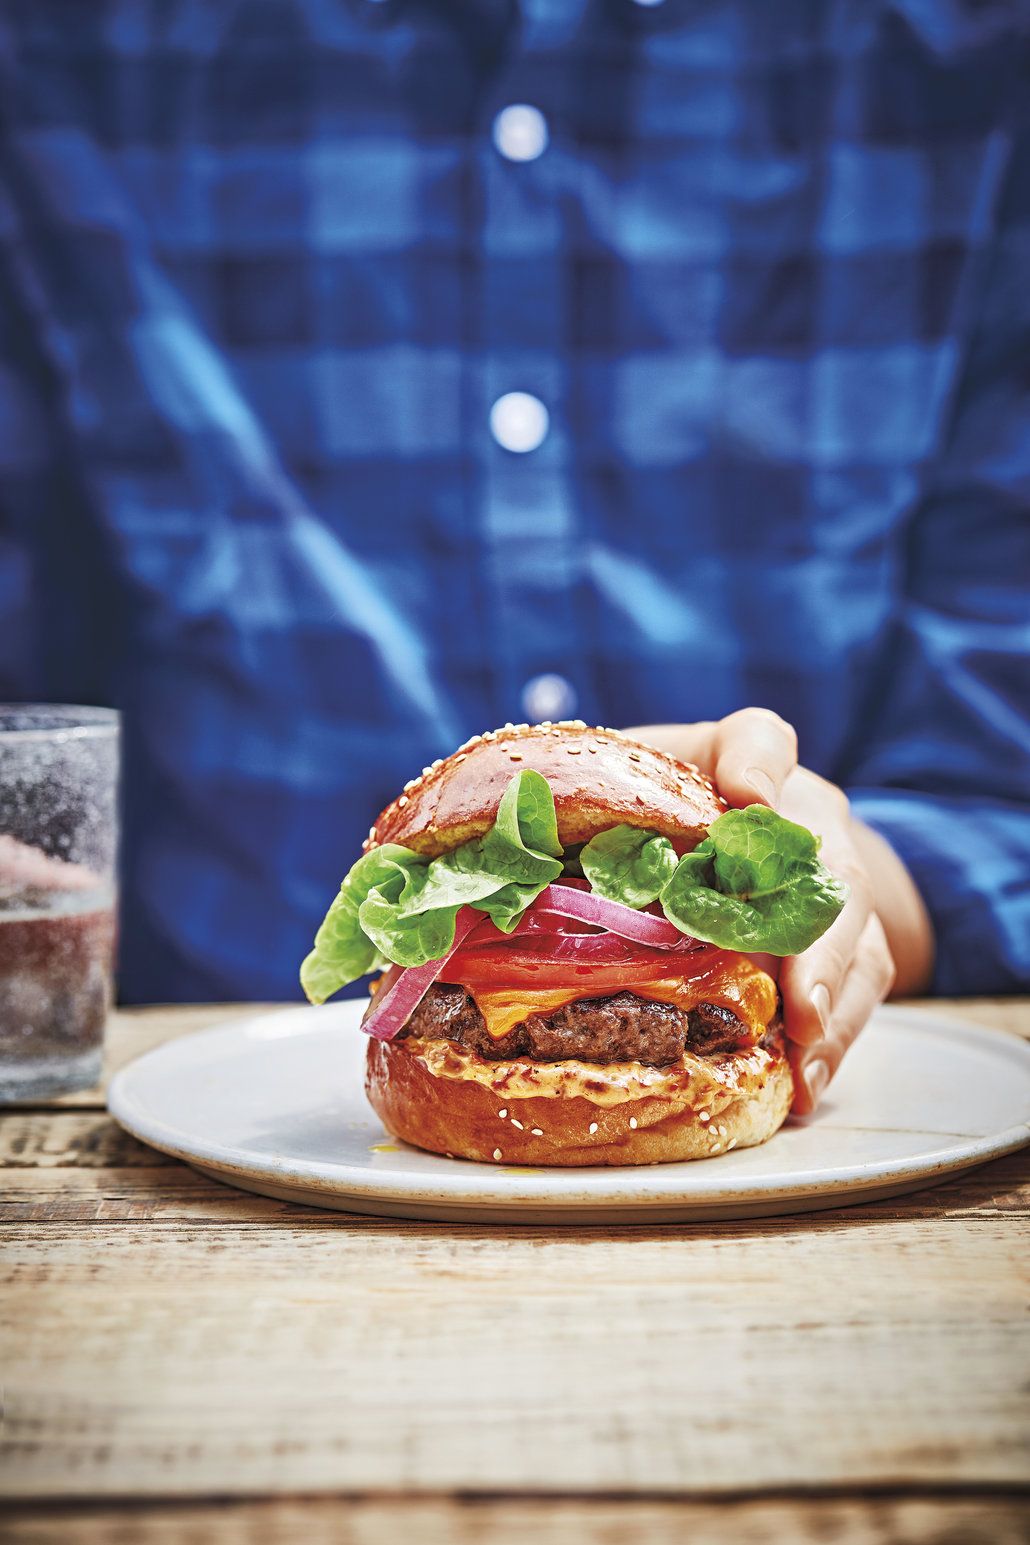 Burger není nezdravé jídlo, pokud ho děláte z kvalitních surovin